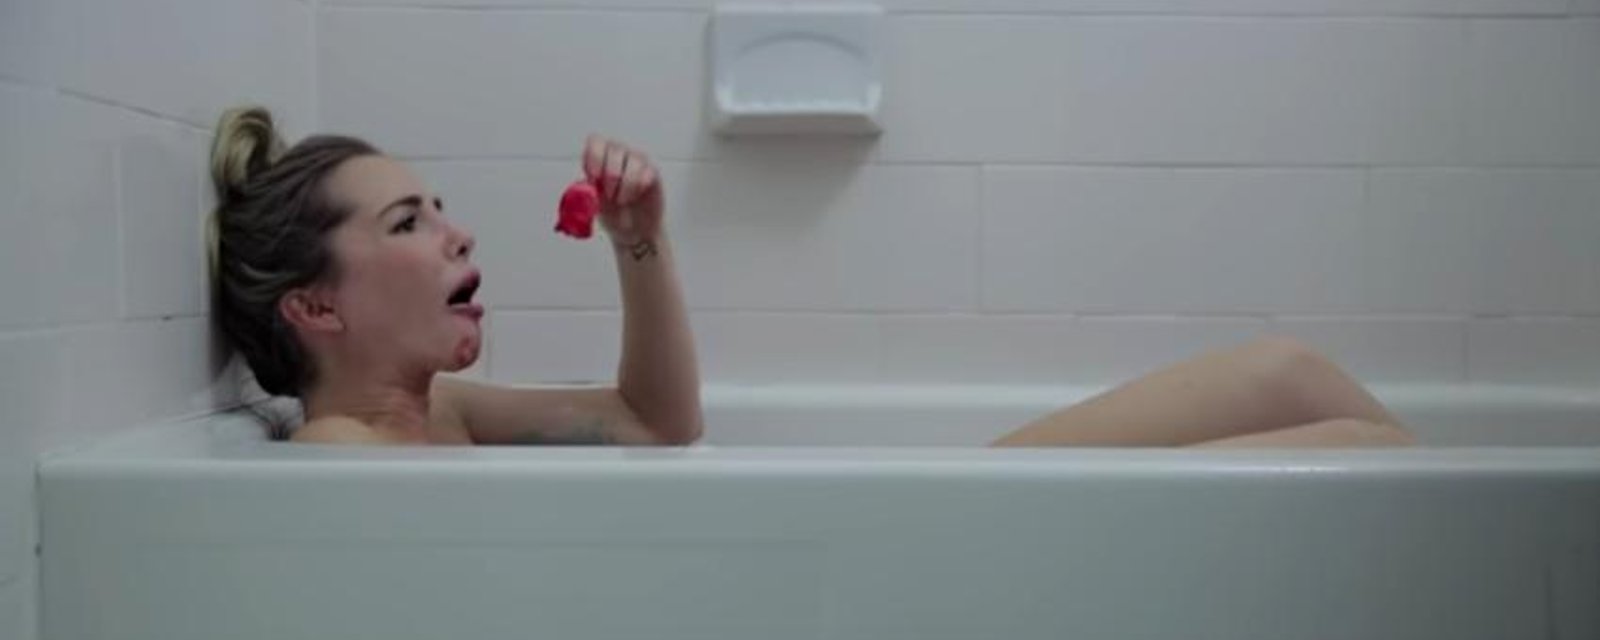 Jessie Nadeau d'OD Bali publie une vidéo horrible sur les menstruations 